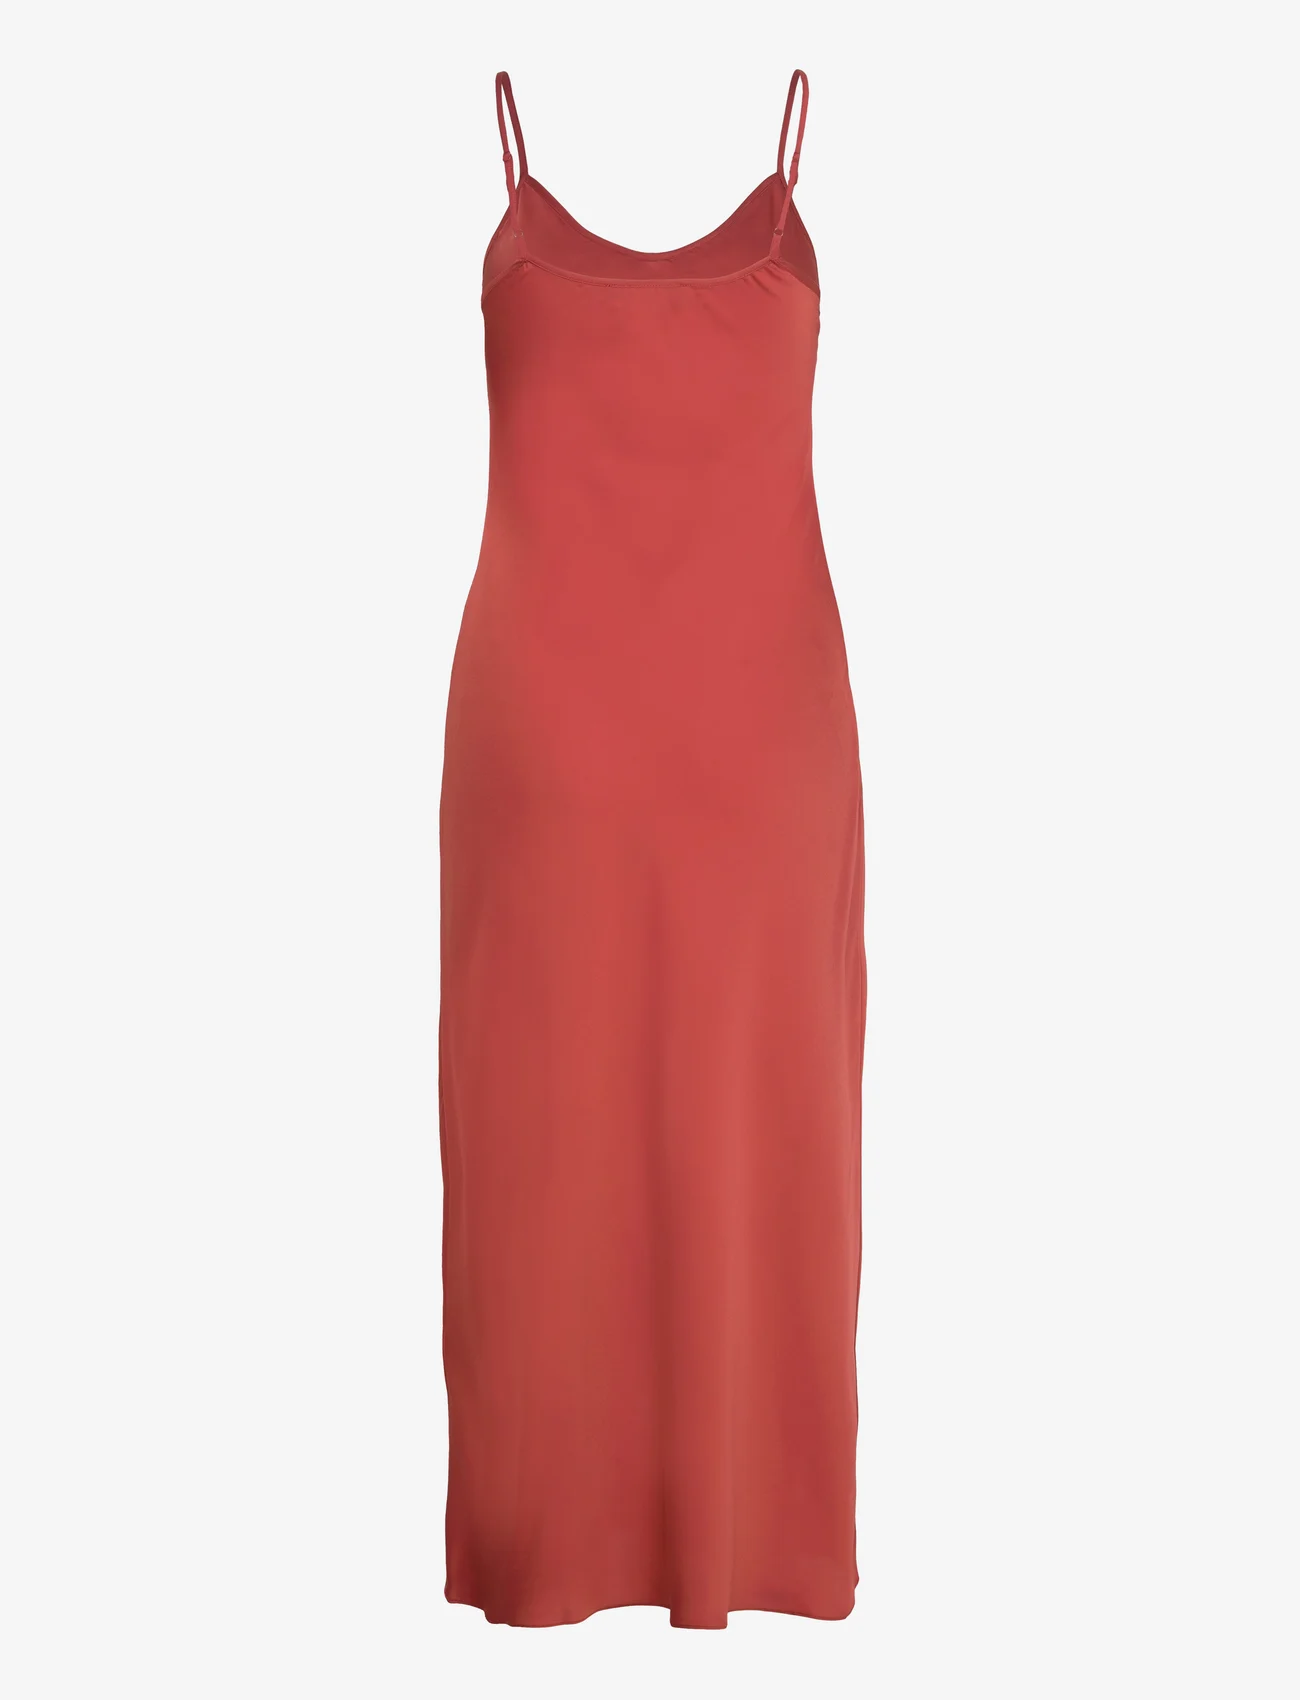 AllSaints - BRYONY DRESS - slip-in jurken - planet red - 1